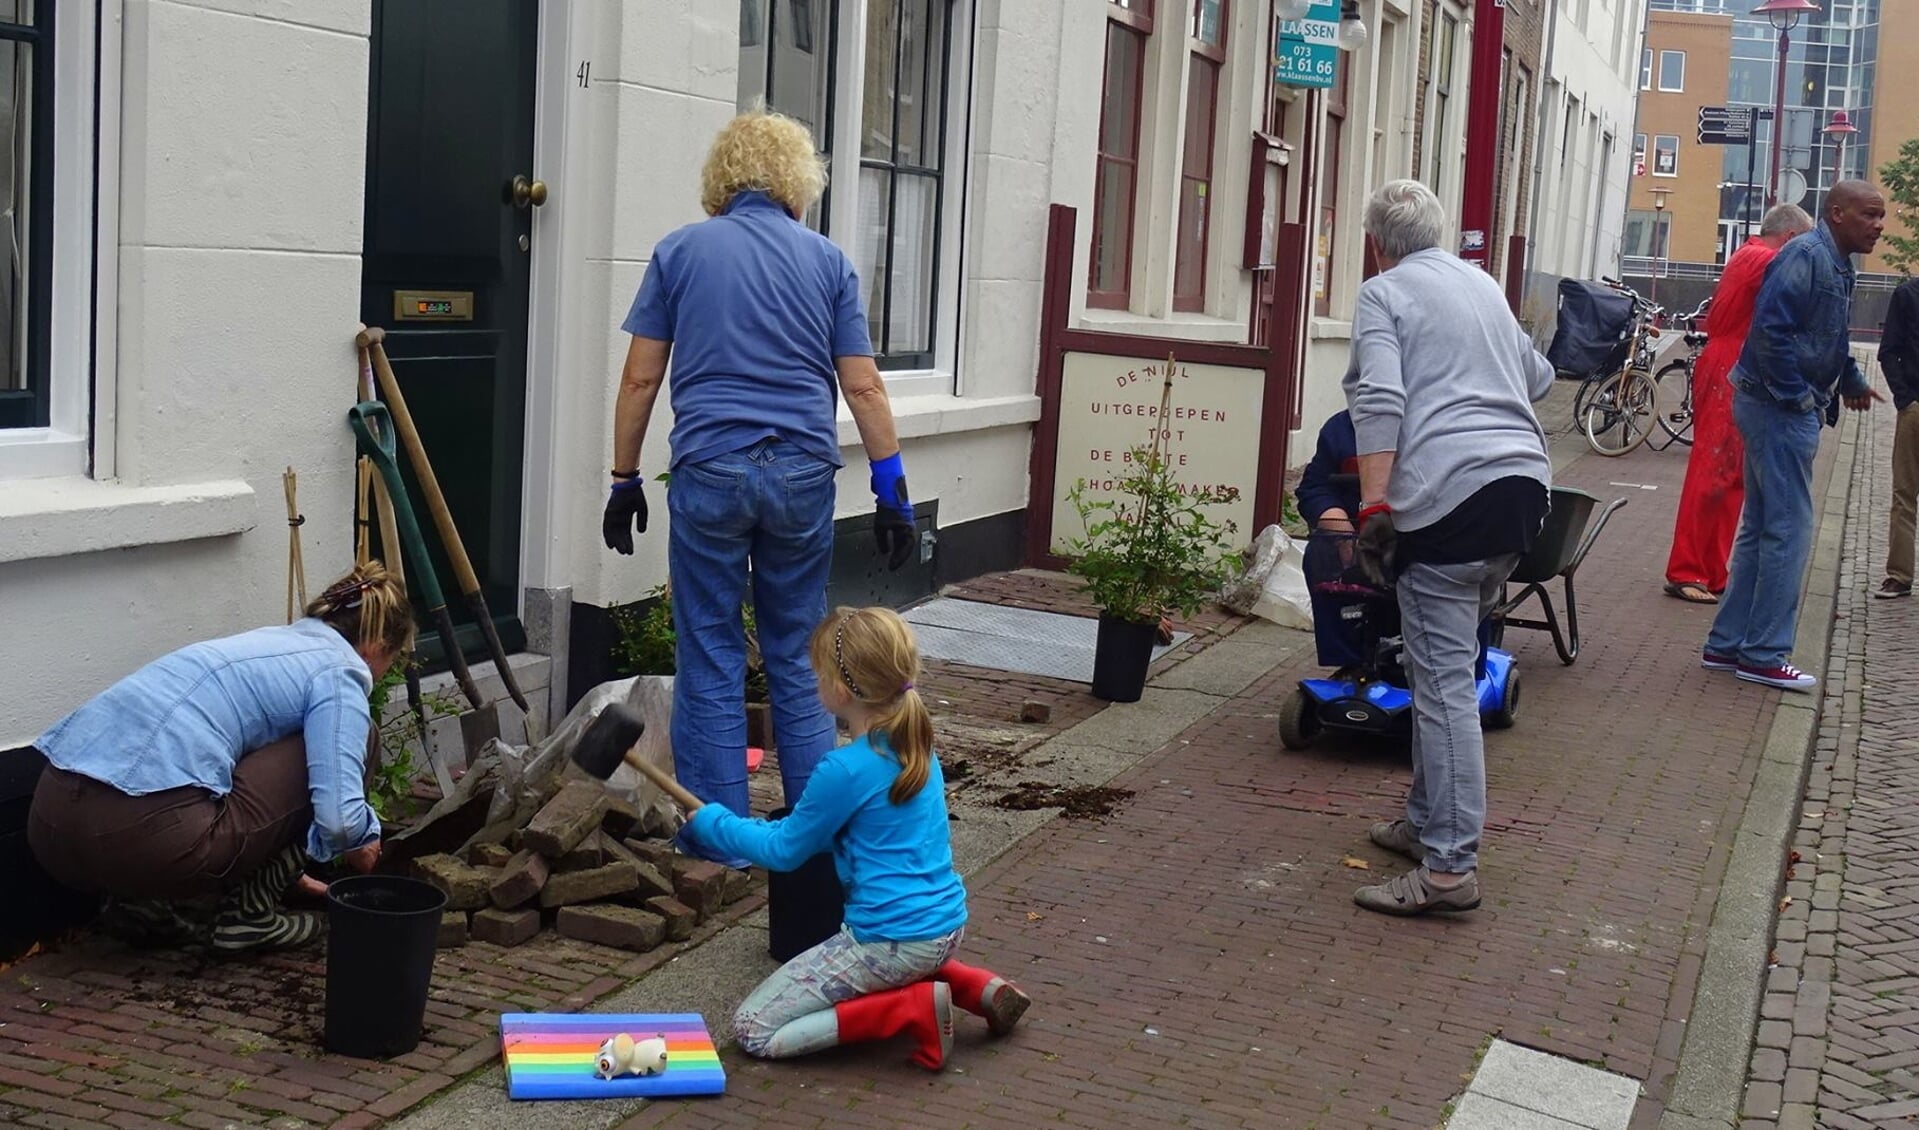 Tegels worden gewipt voor Middelburg Rozenstad, 2016